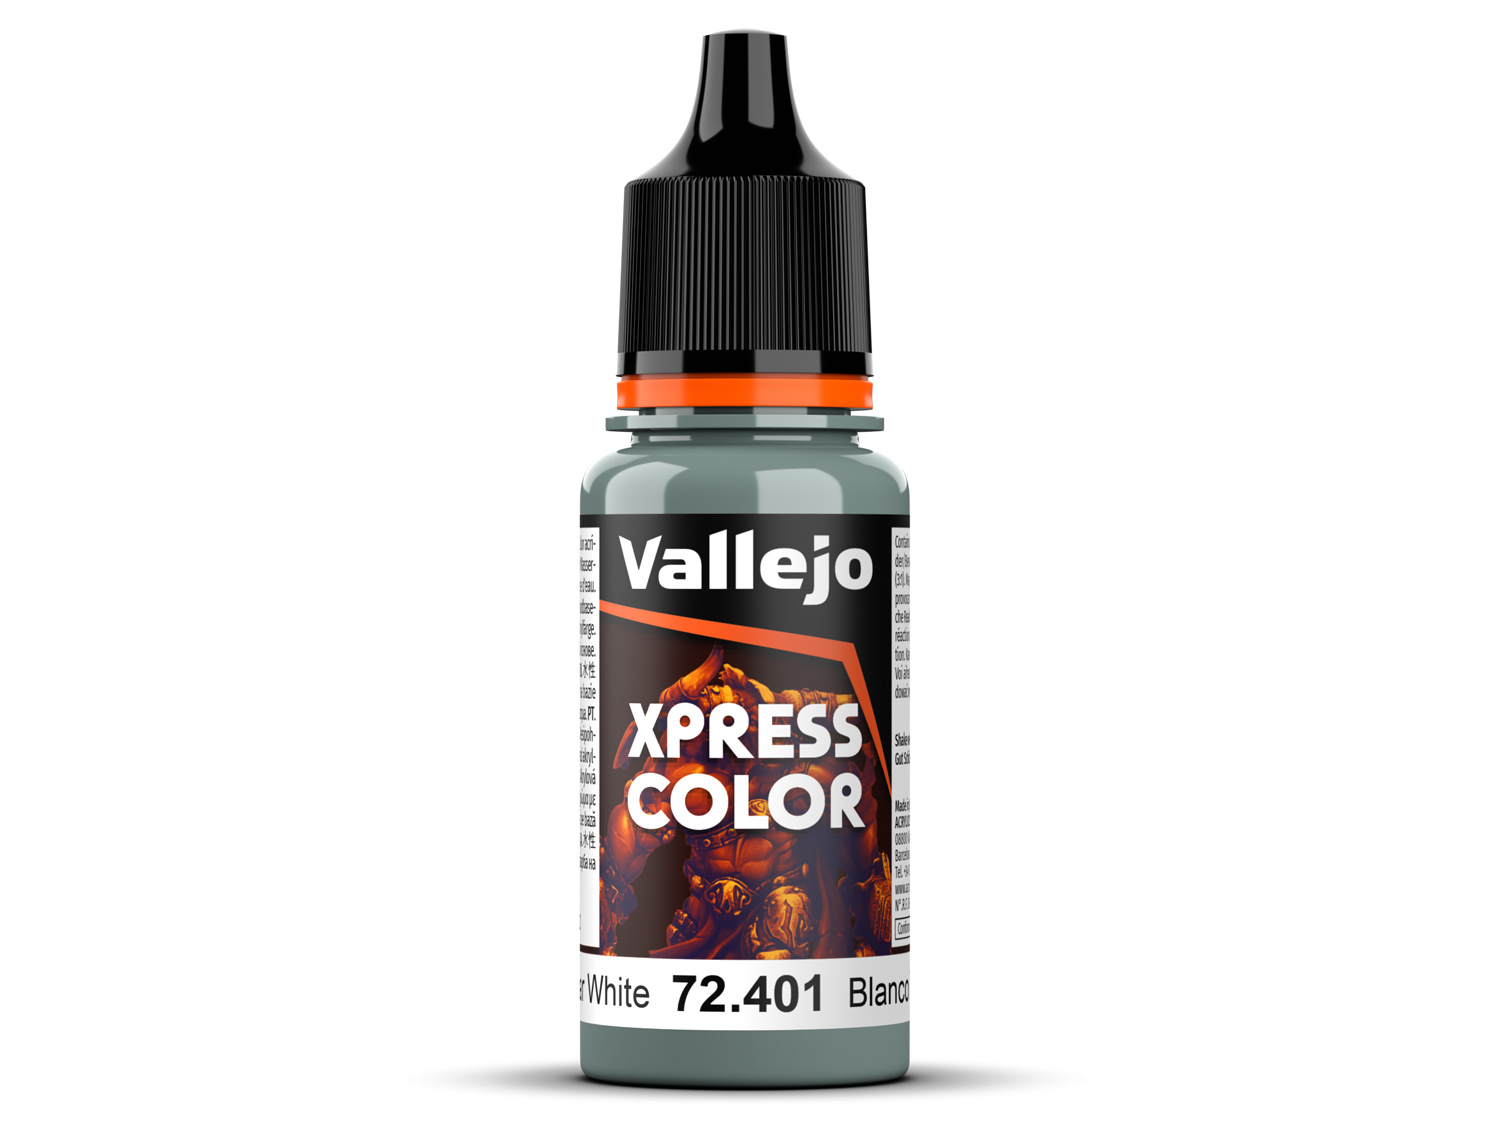 Vallejo Pigment Titanium White 73101 in 35 ml bottles